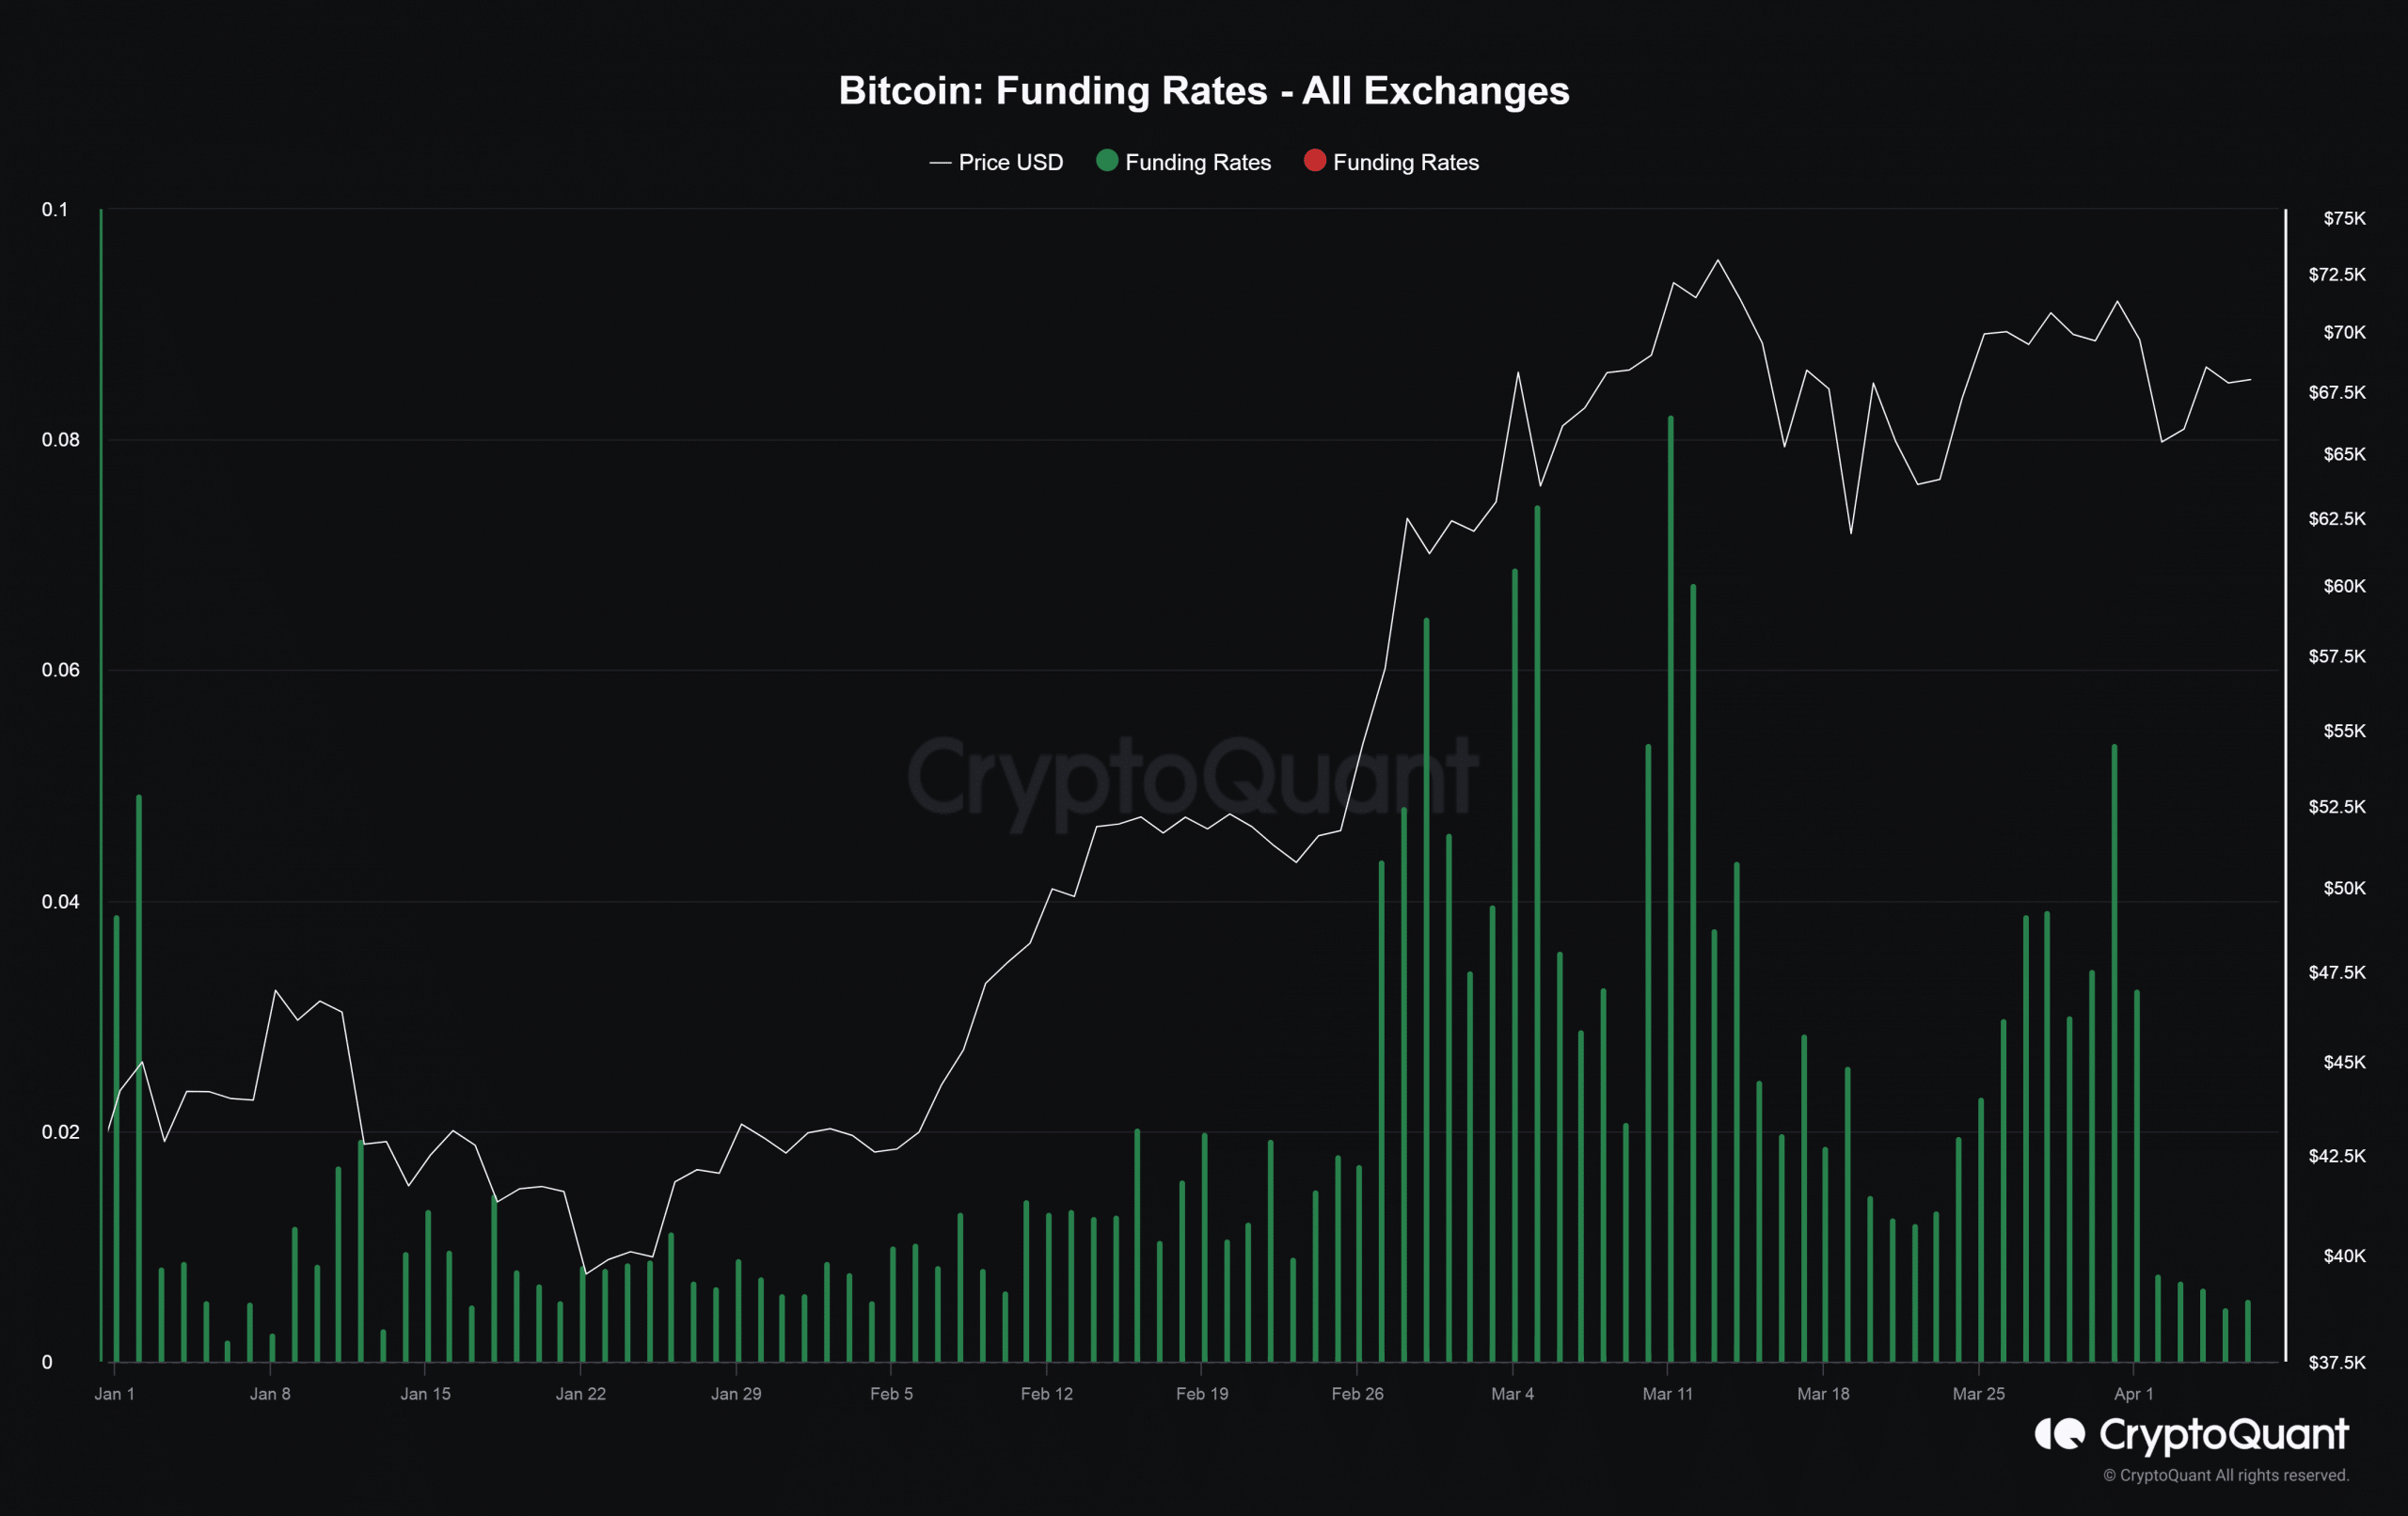 Bitcoin funding rates